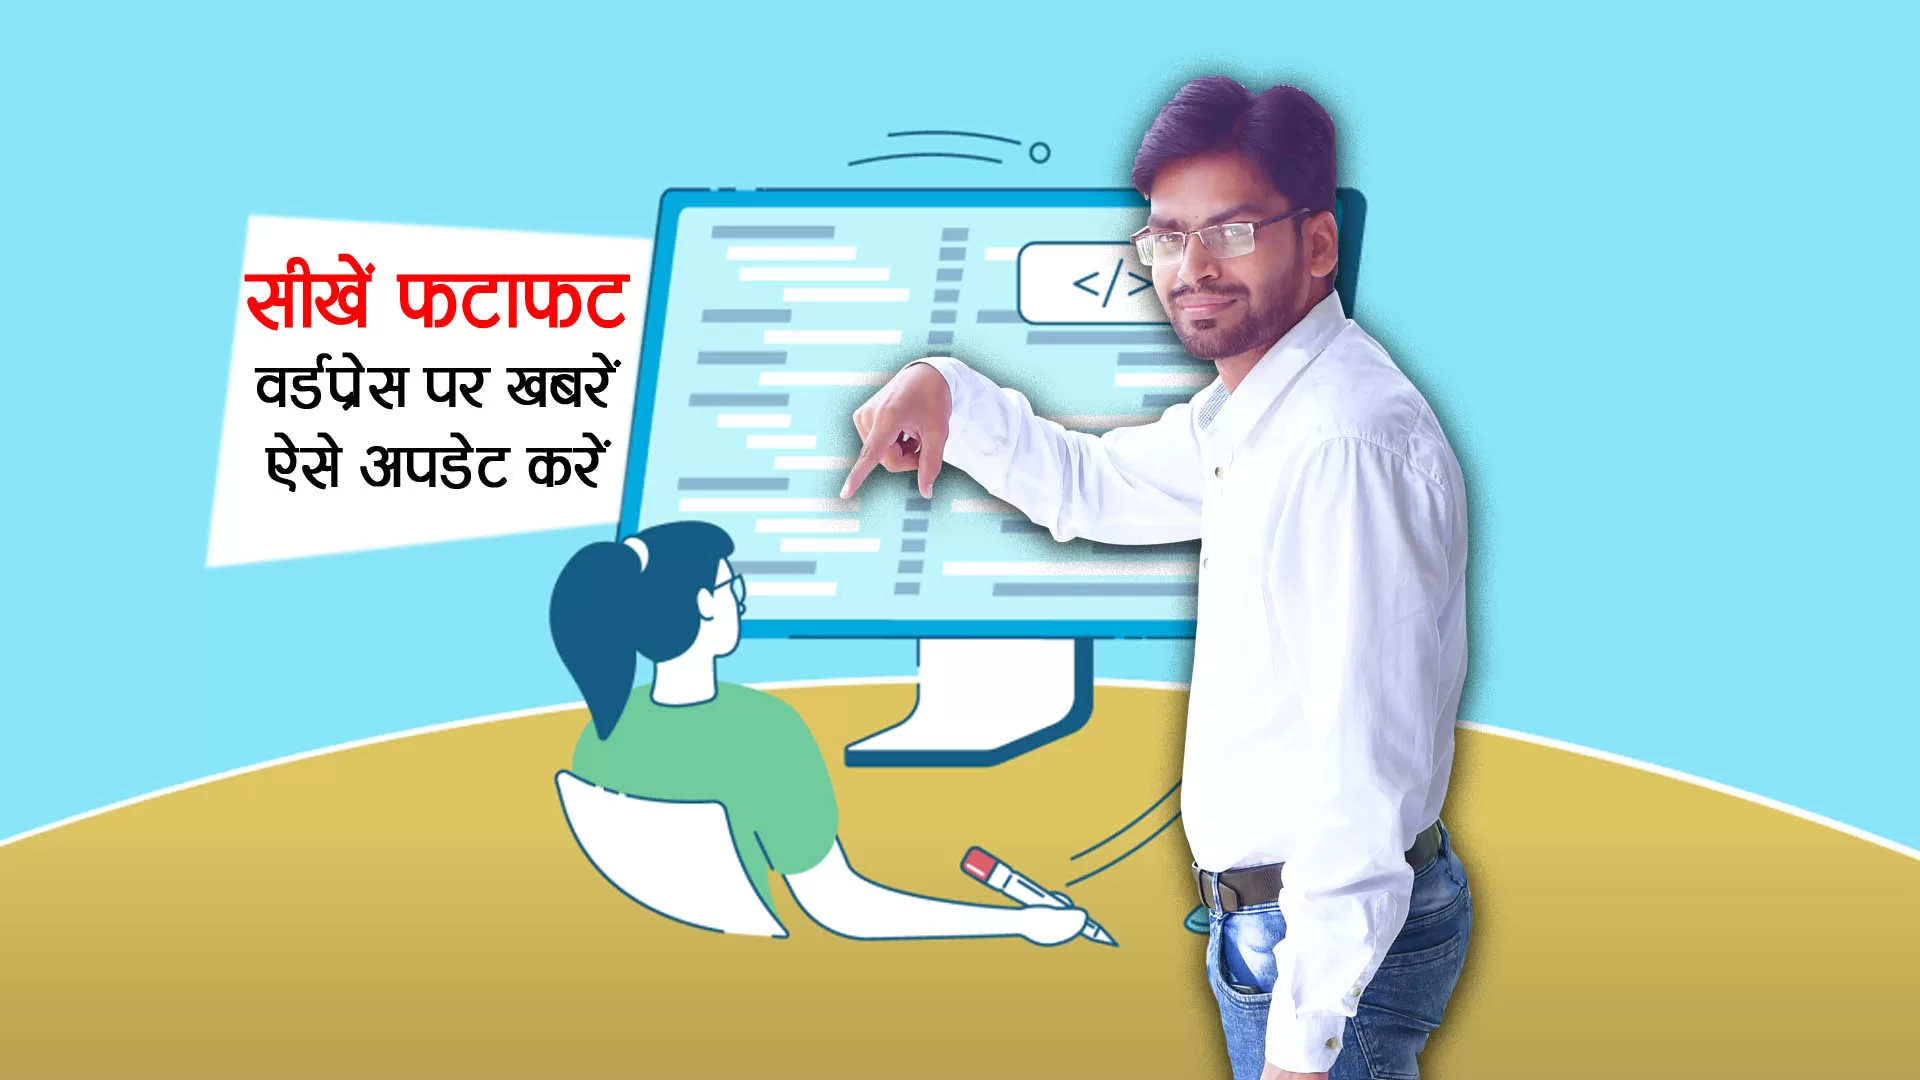 Wordpress par news kaise upload karein | wordpress free website tutorial hindi